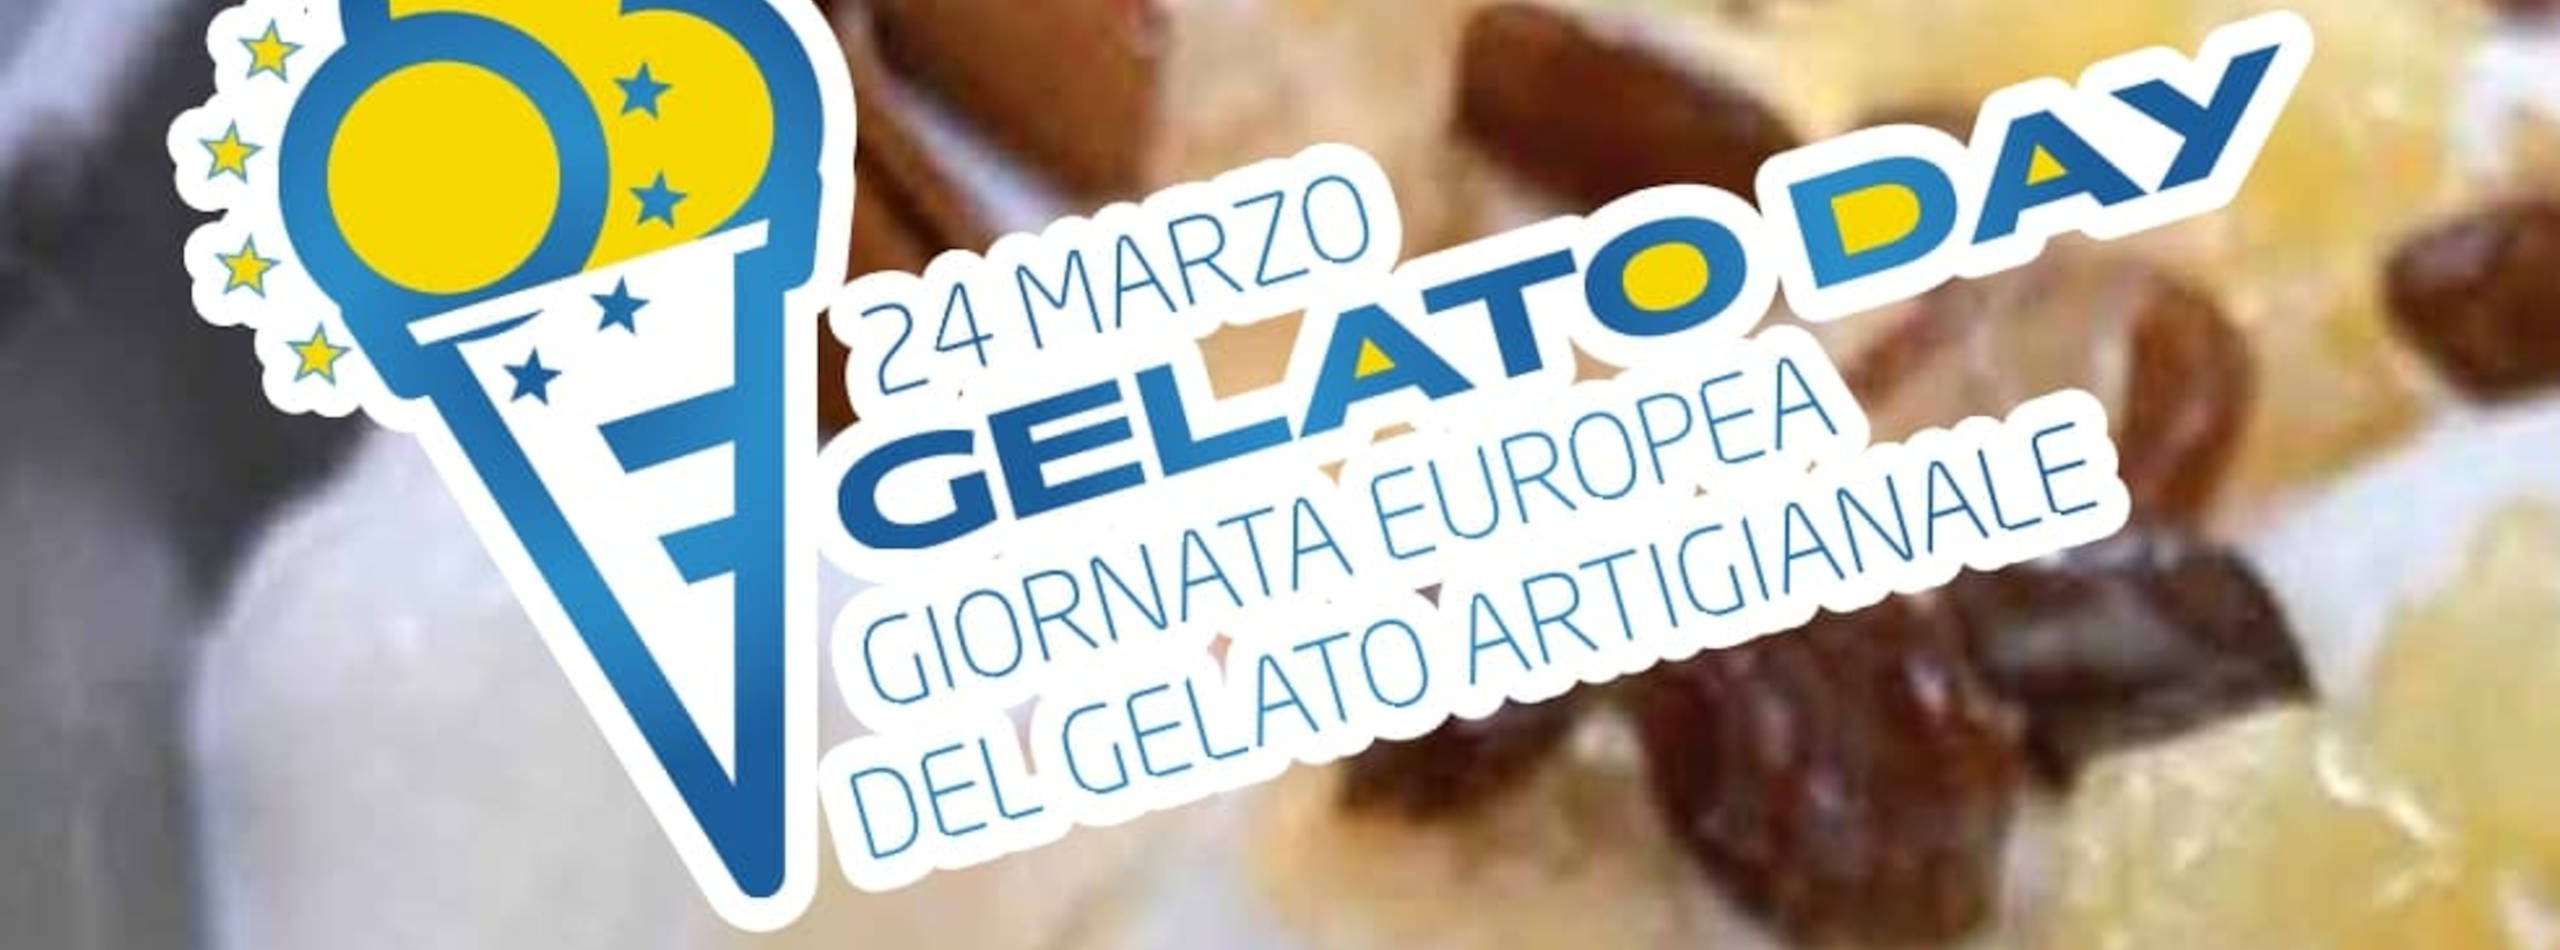 gelato-artigianale-da-record:-in-europa-sfiora-i-10-miliardi-di-euro-di-fatturato